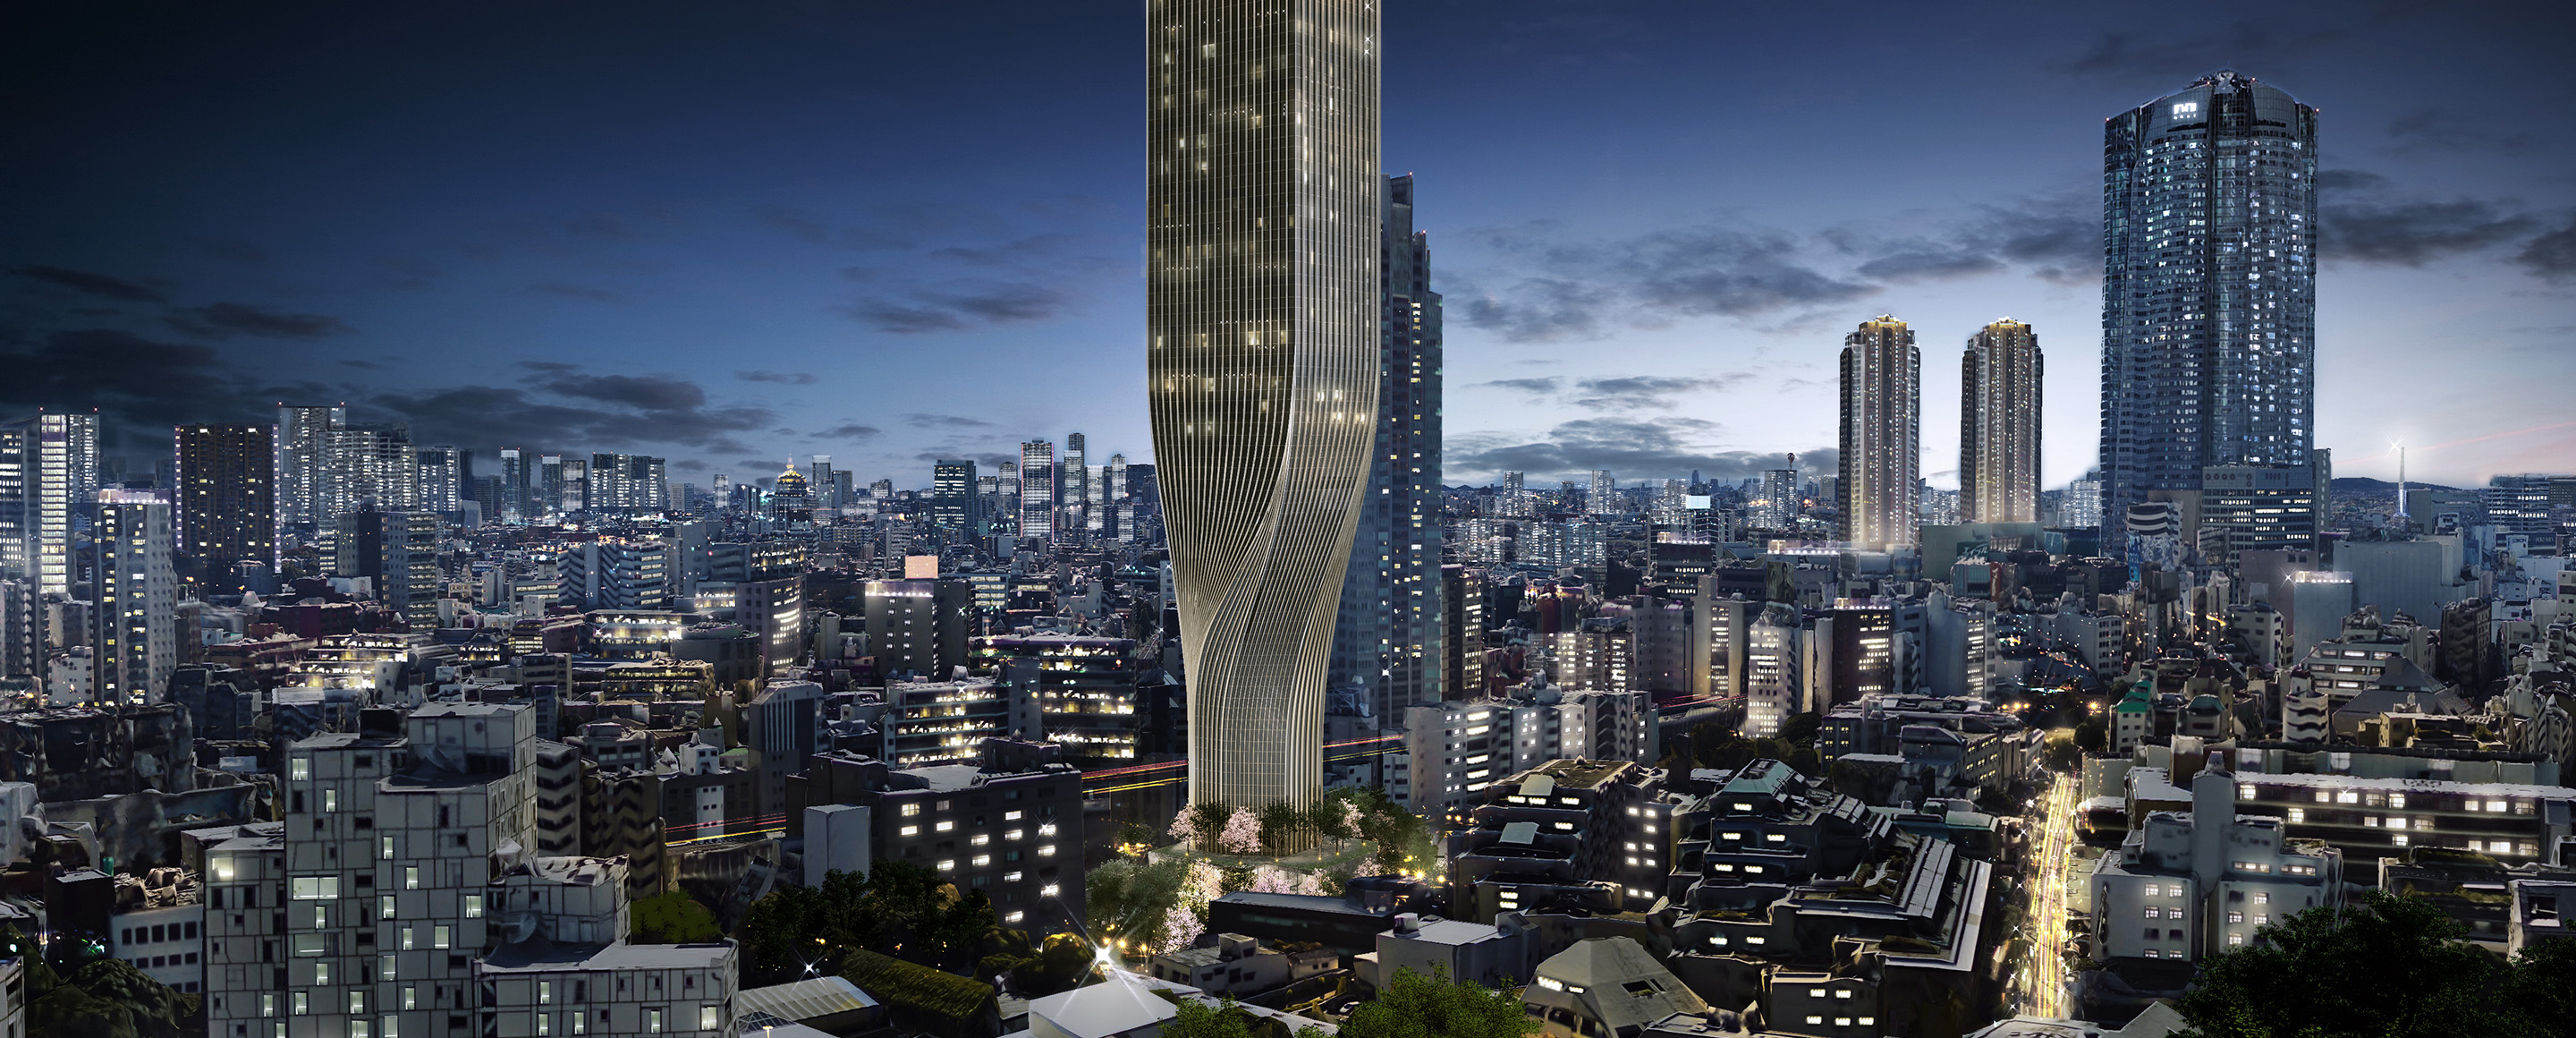 六本木4丁目の湖雲寺跡地に建設予定のホテル ランガム は衝撃的なデザインになる 超高層マンション 超高層ビル